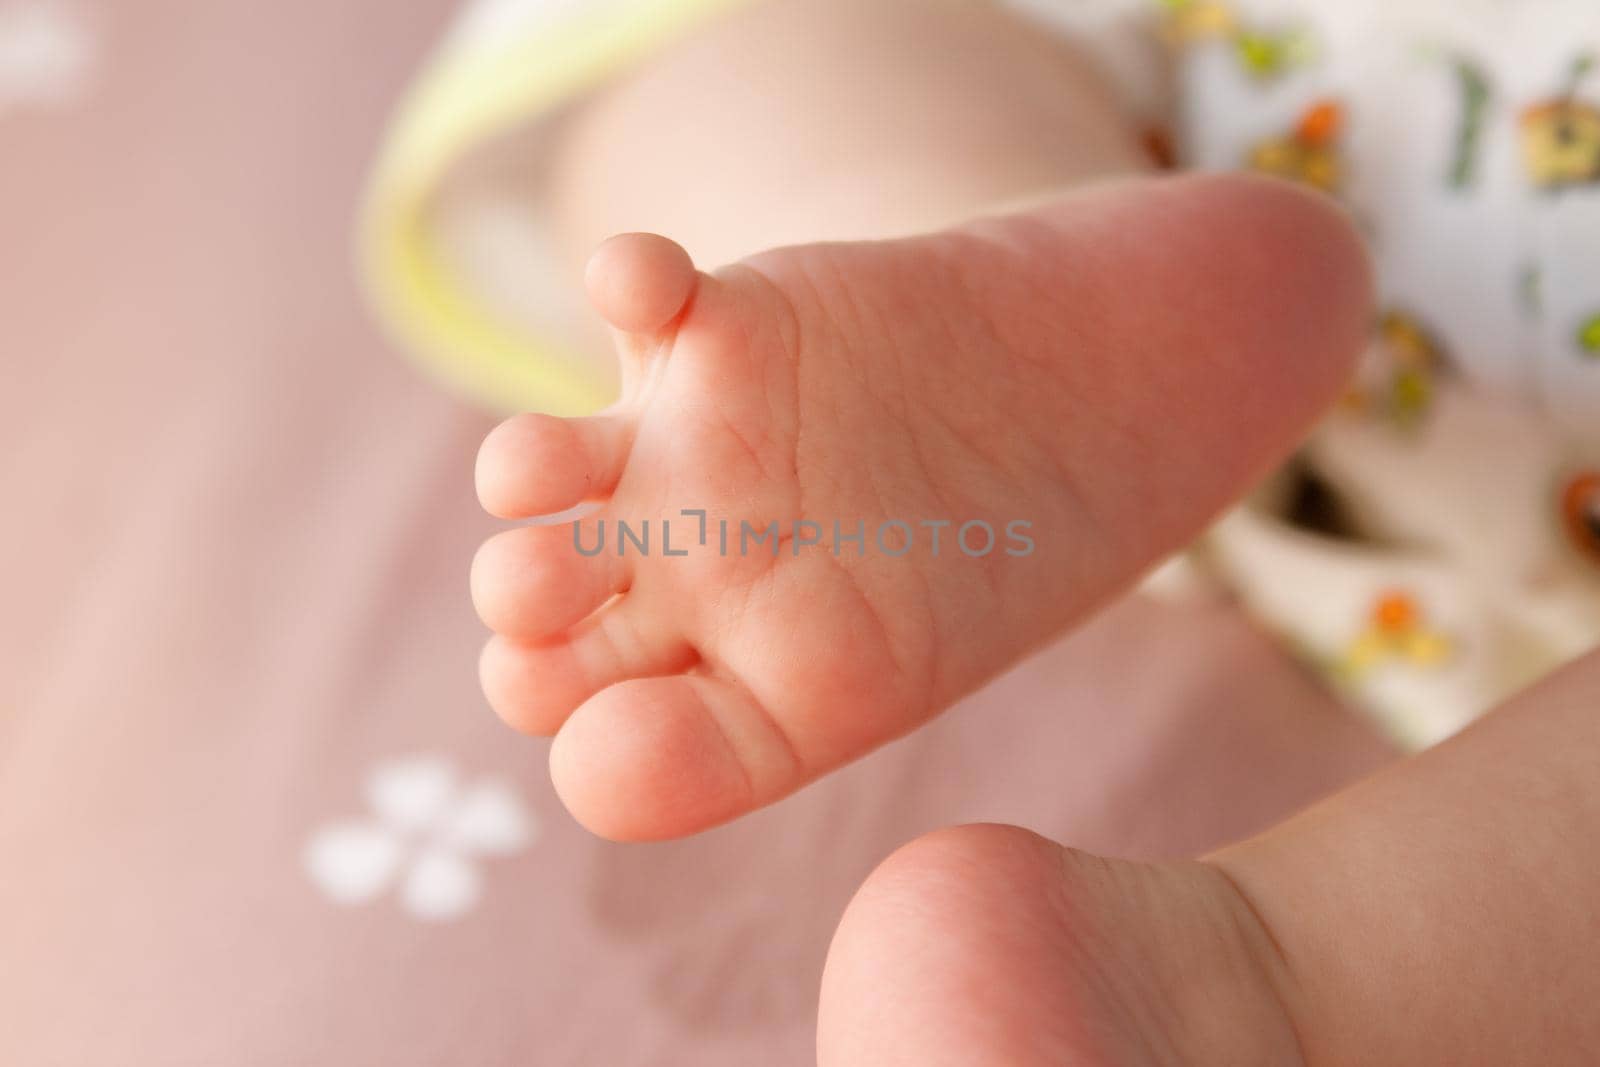 Photo of newborn baby feet by kisika